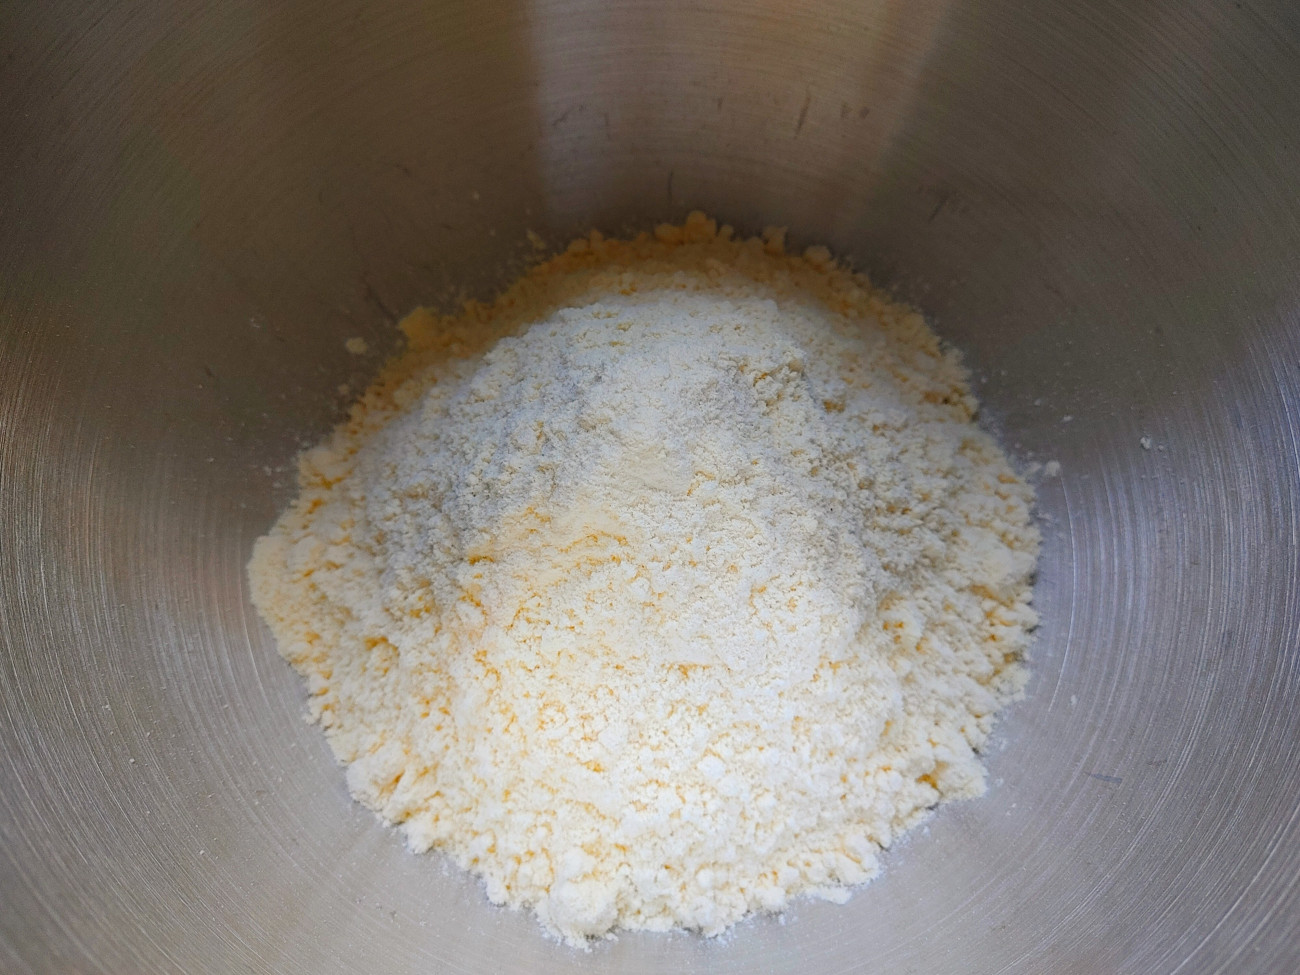 Kukoricaliszt: könnyű felismerni halványsárga színéről, porózus állagáról